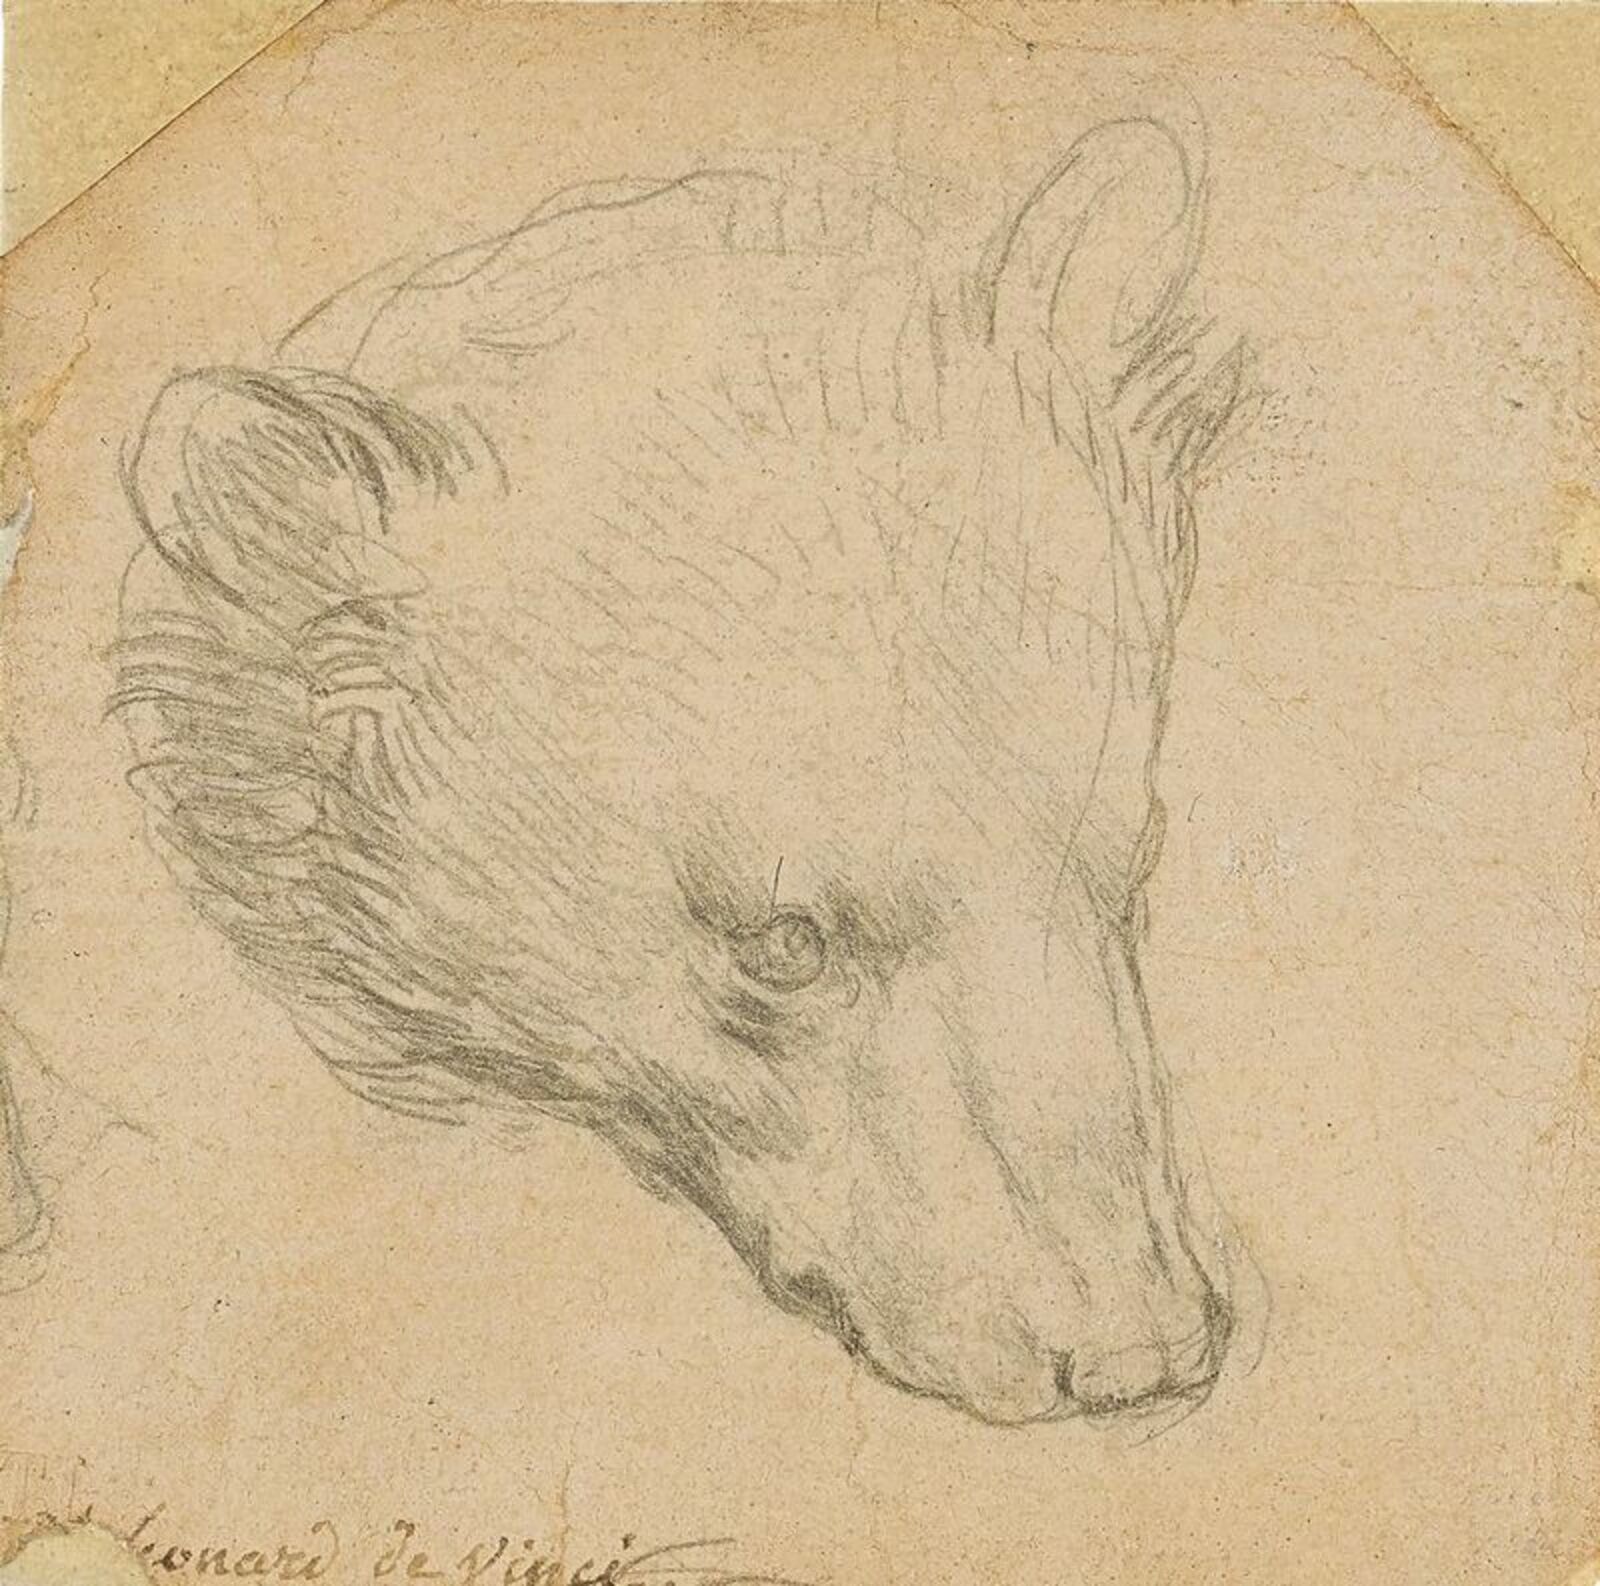 Рисунок Леонардо да Винчи «Голова медведя» был продан вчера в Лондоне за $12,2 млн